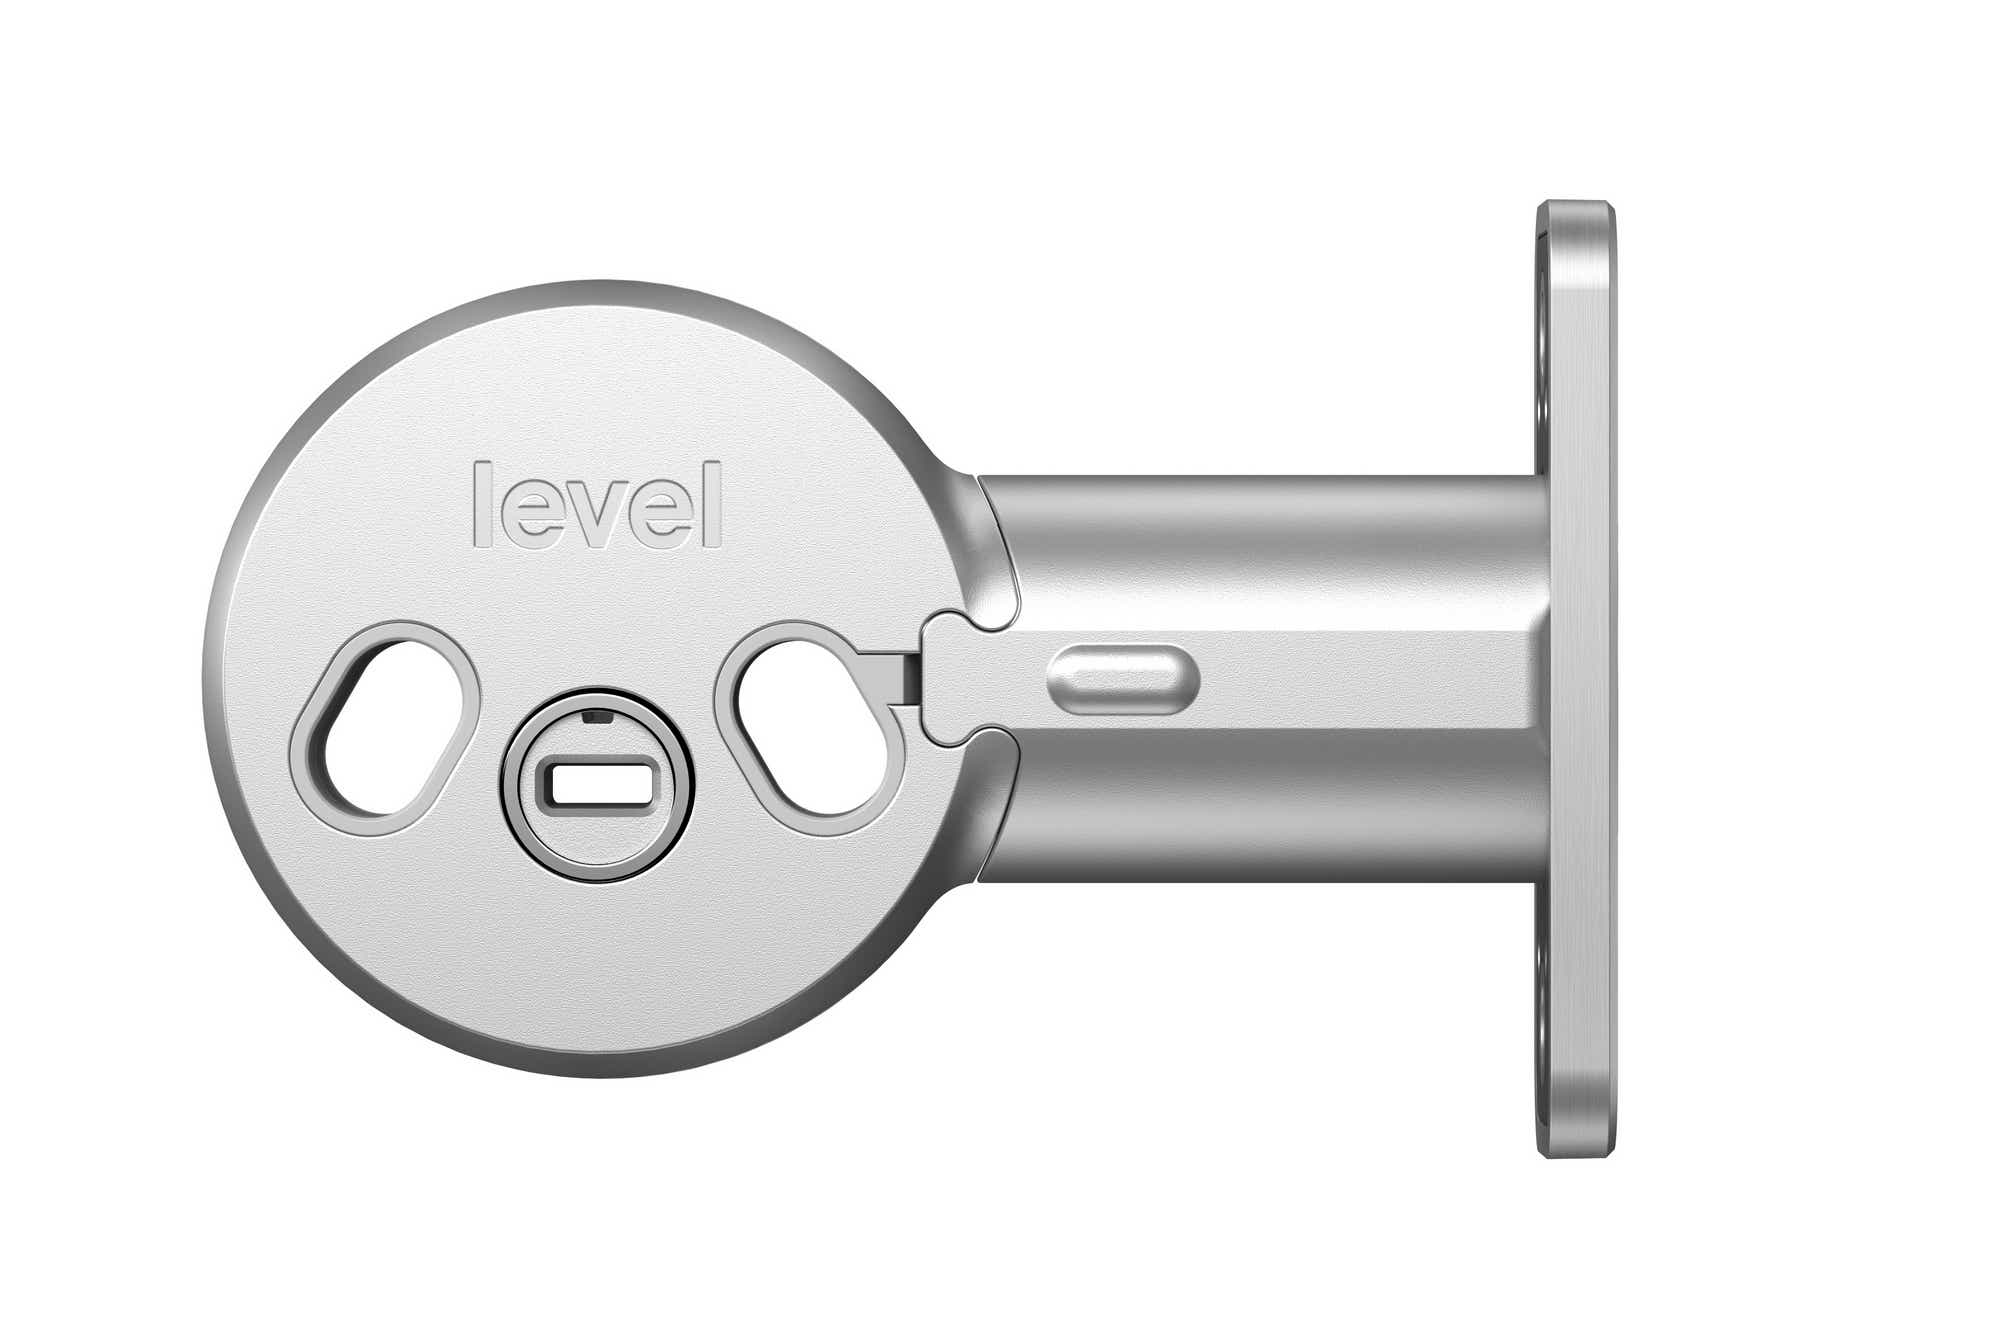 Level Bolt (now Level Bolt Connect) -- Best retrofit smart lock